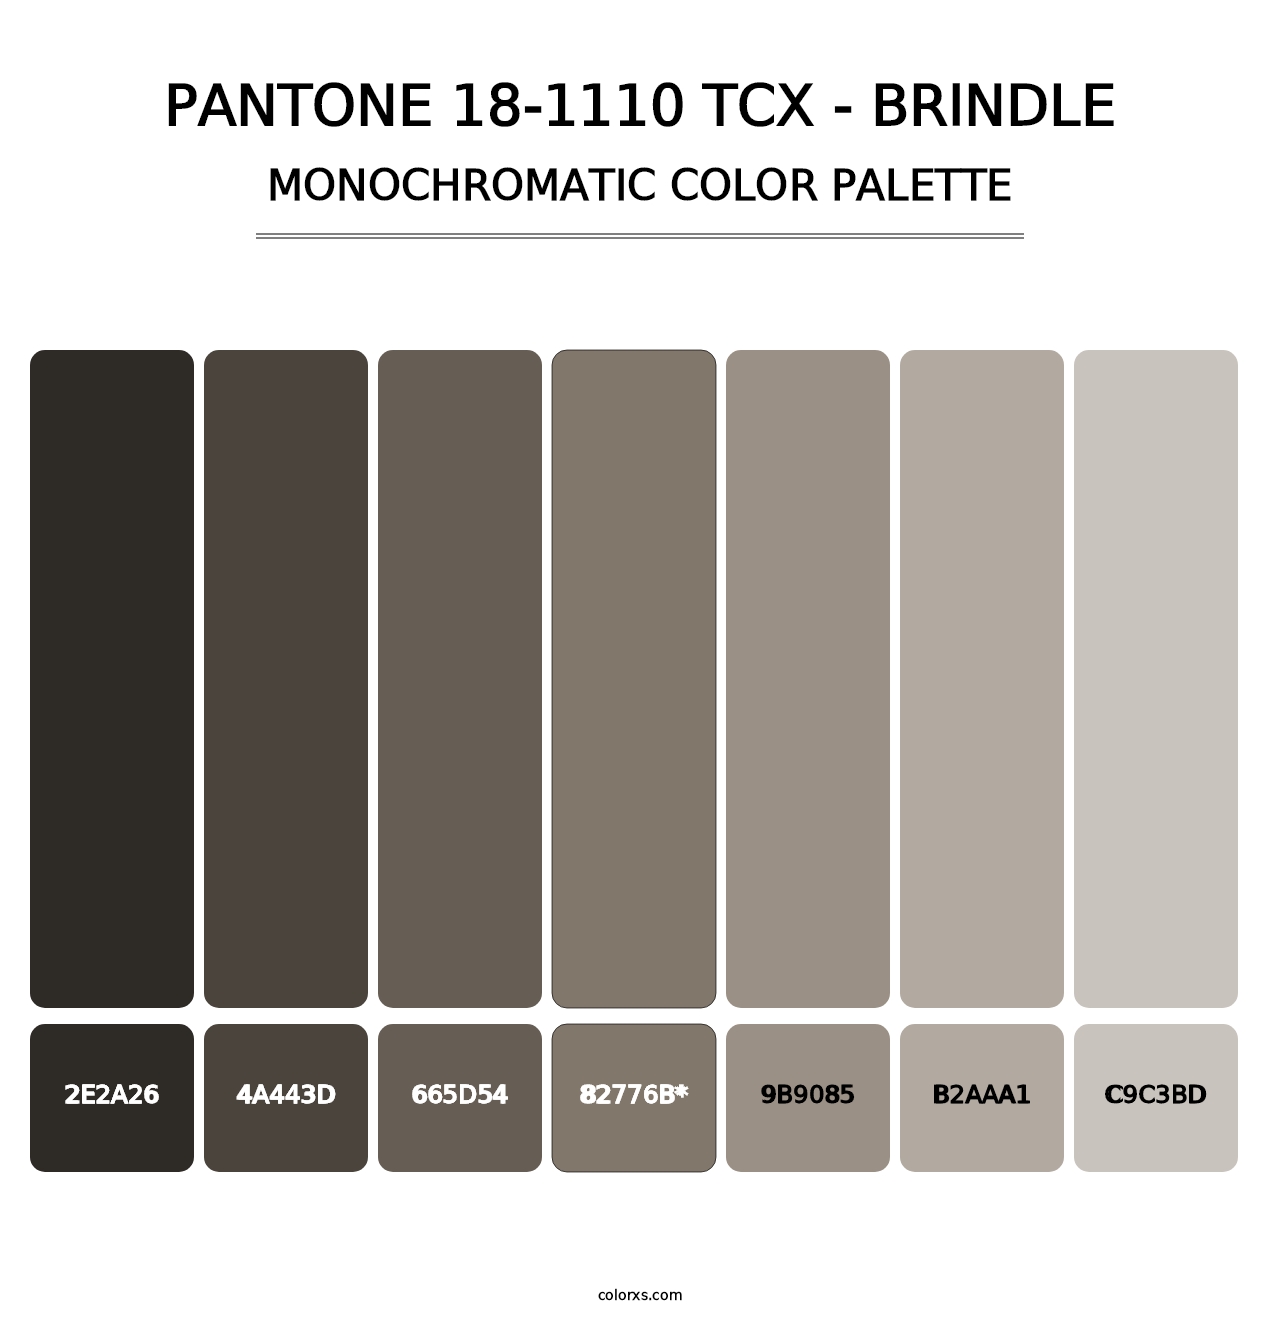 PANTONE 18-1110 TCX - Brindle - Monochromatic Color Palette